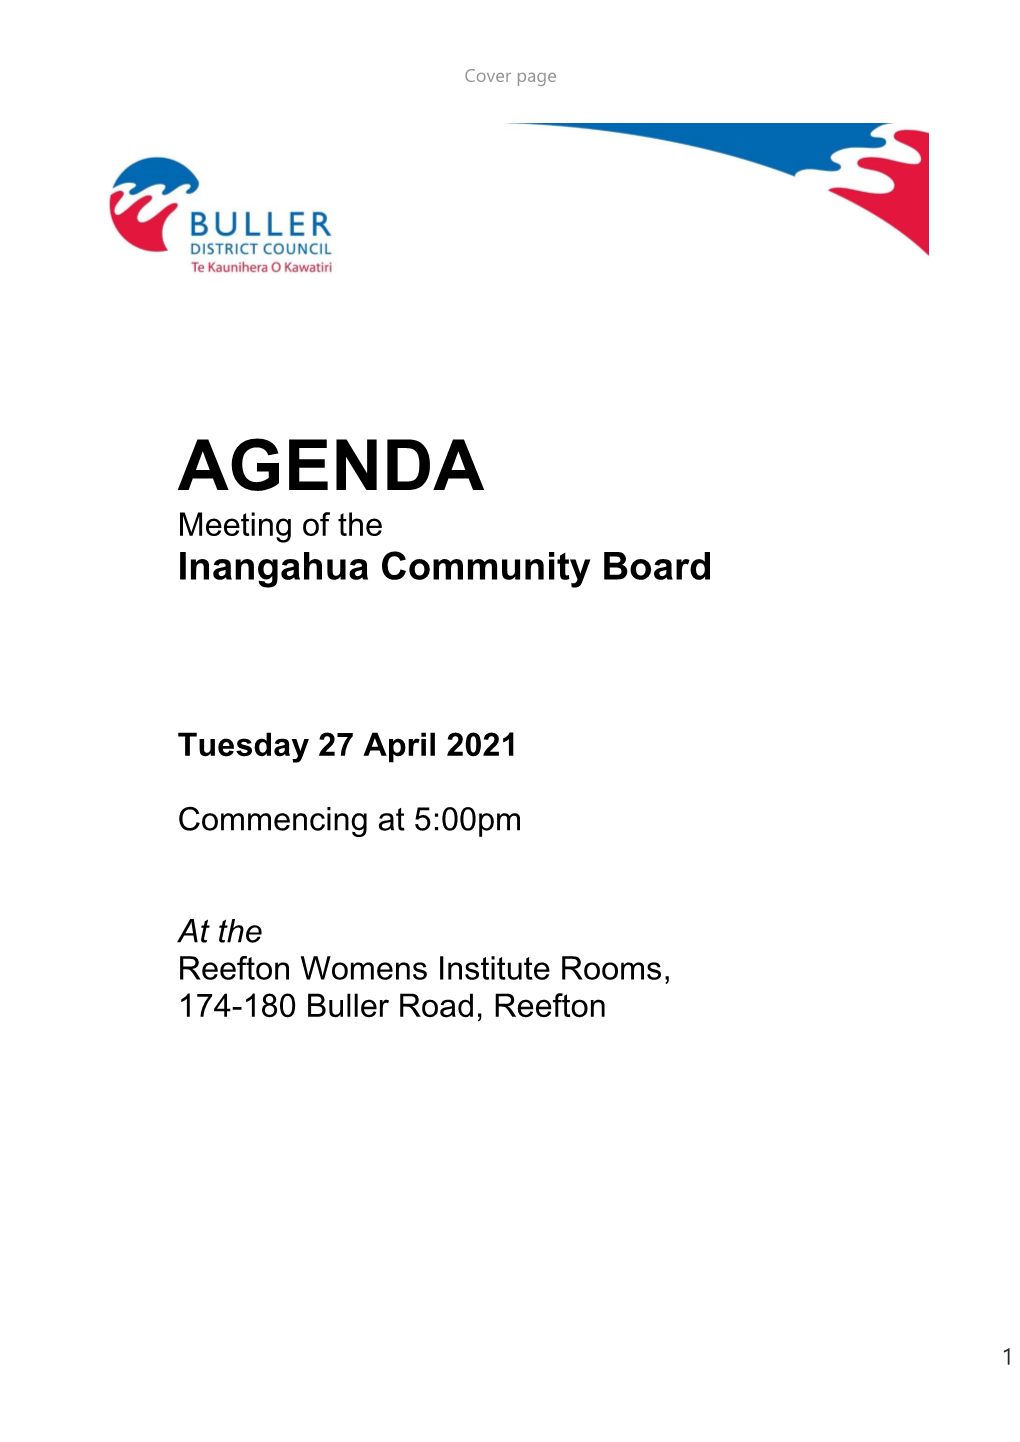 Inangahua Community Board – 27 April 2021